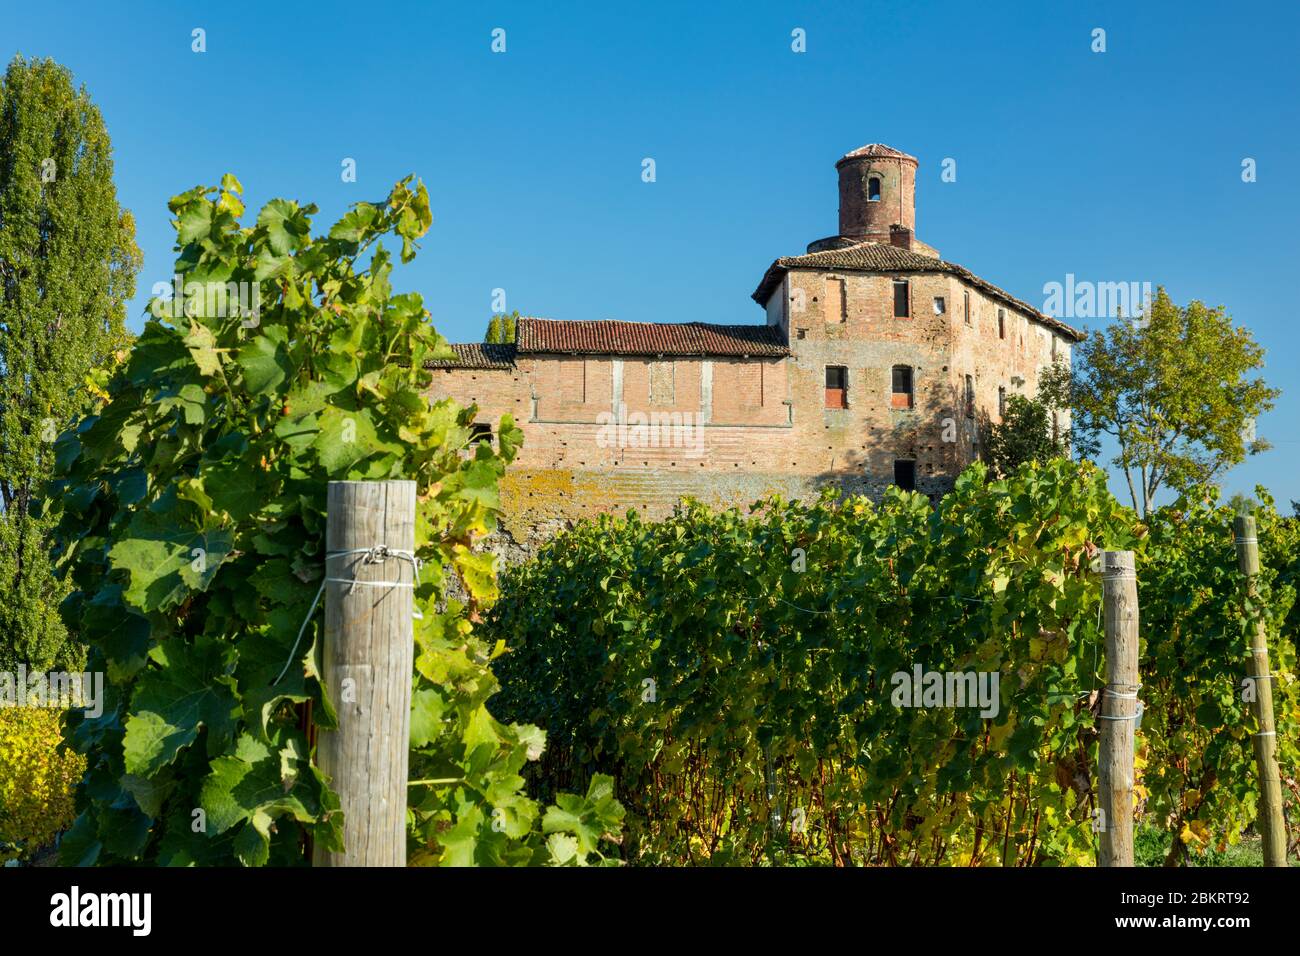 Castello della Volta rises above vineyards near Barolo, Piemonte, Italy Stock Photo